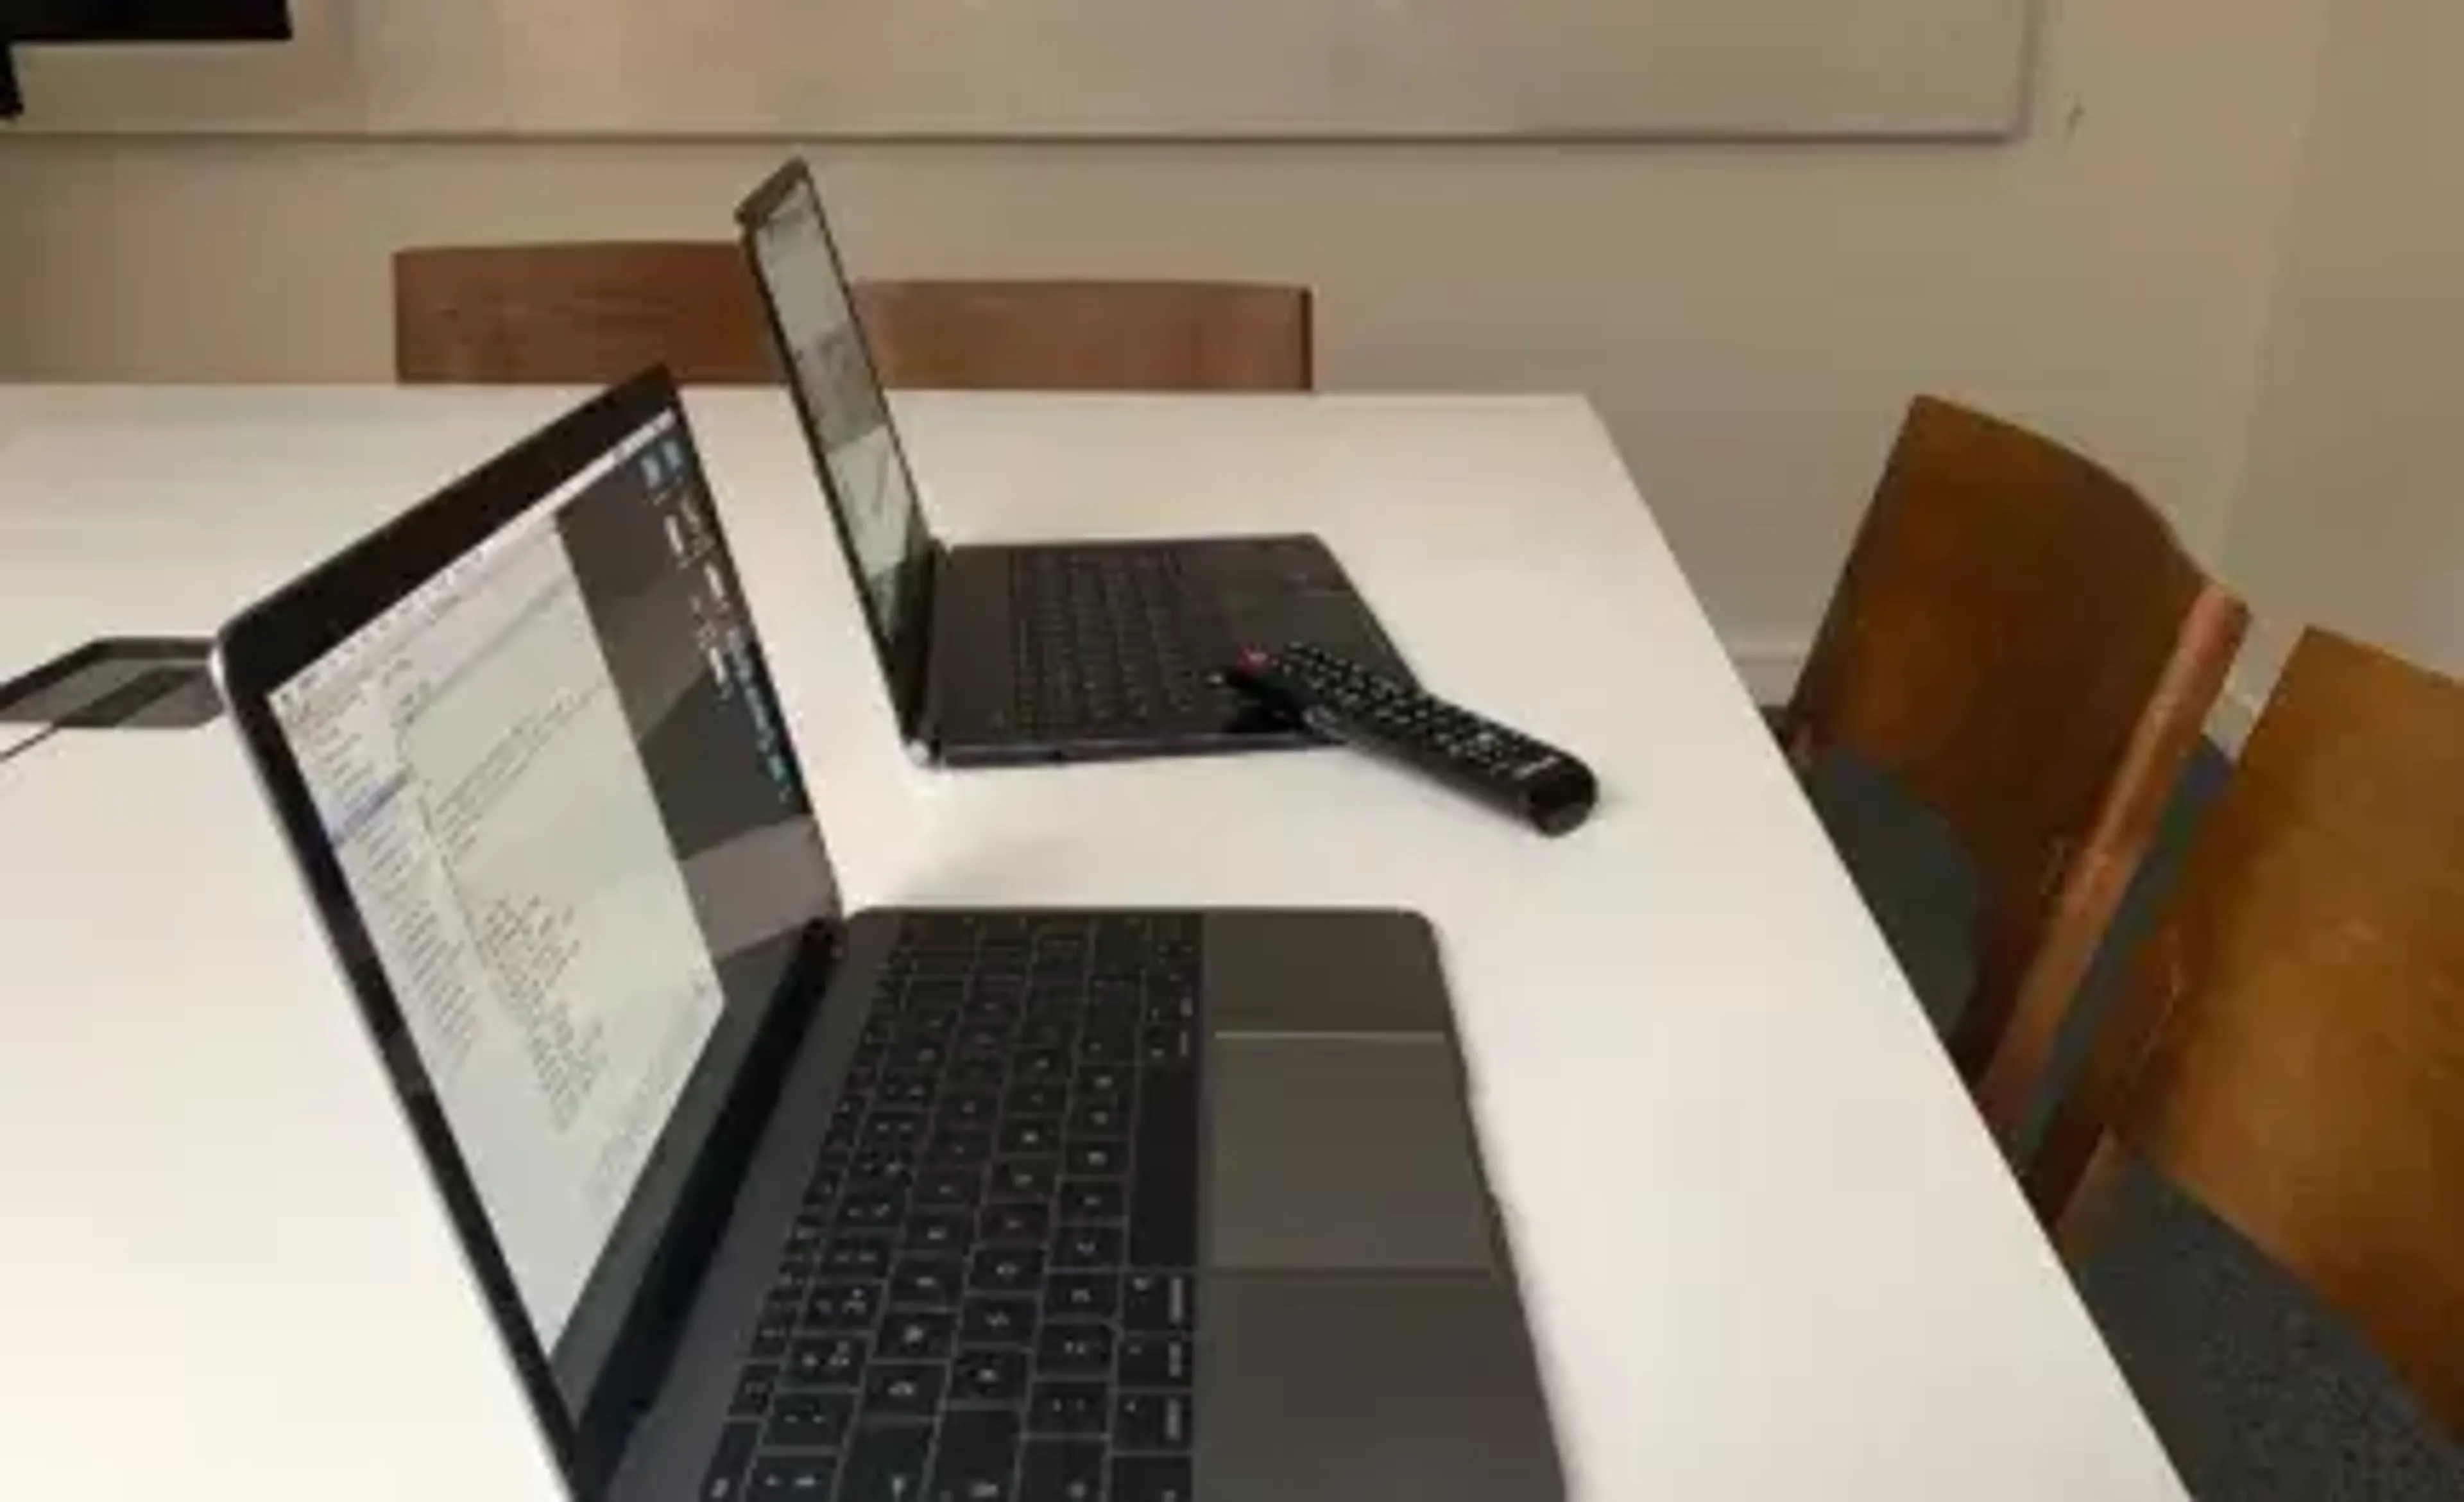 Laptops on a desk